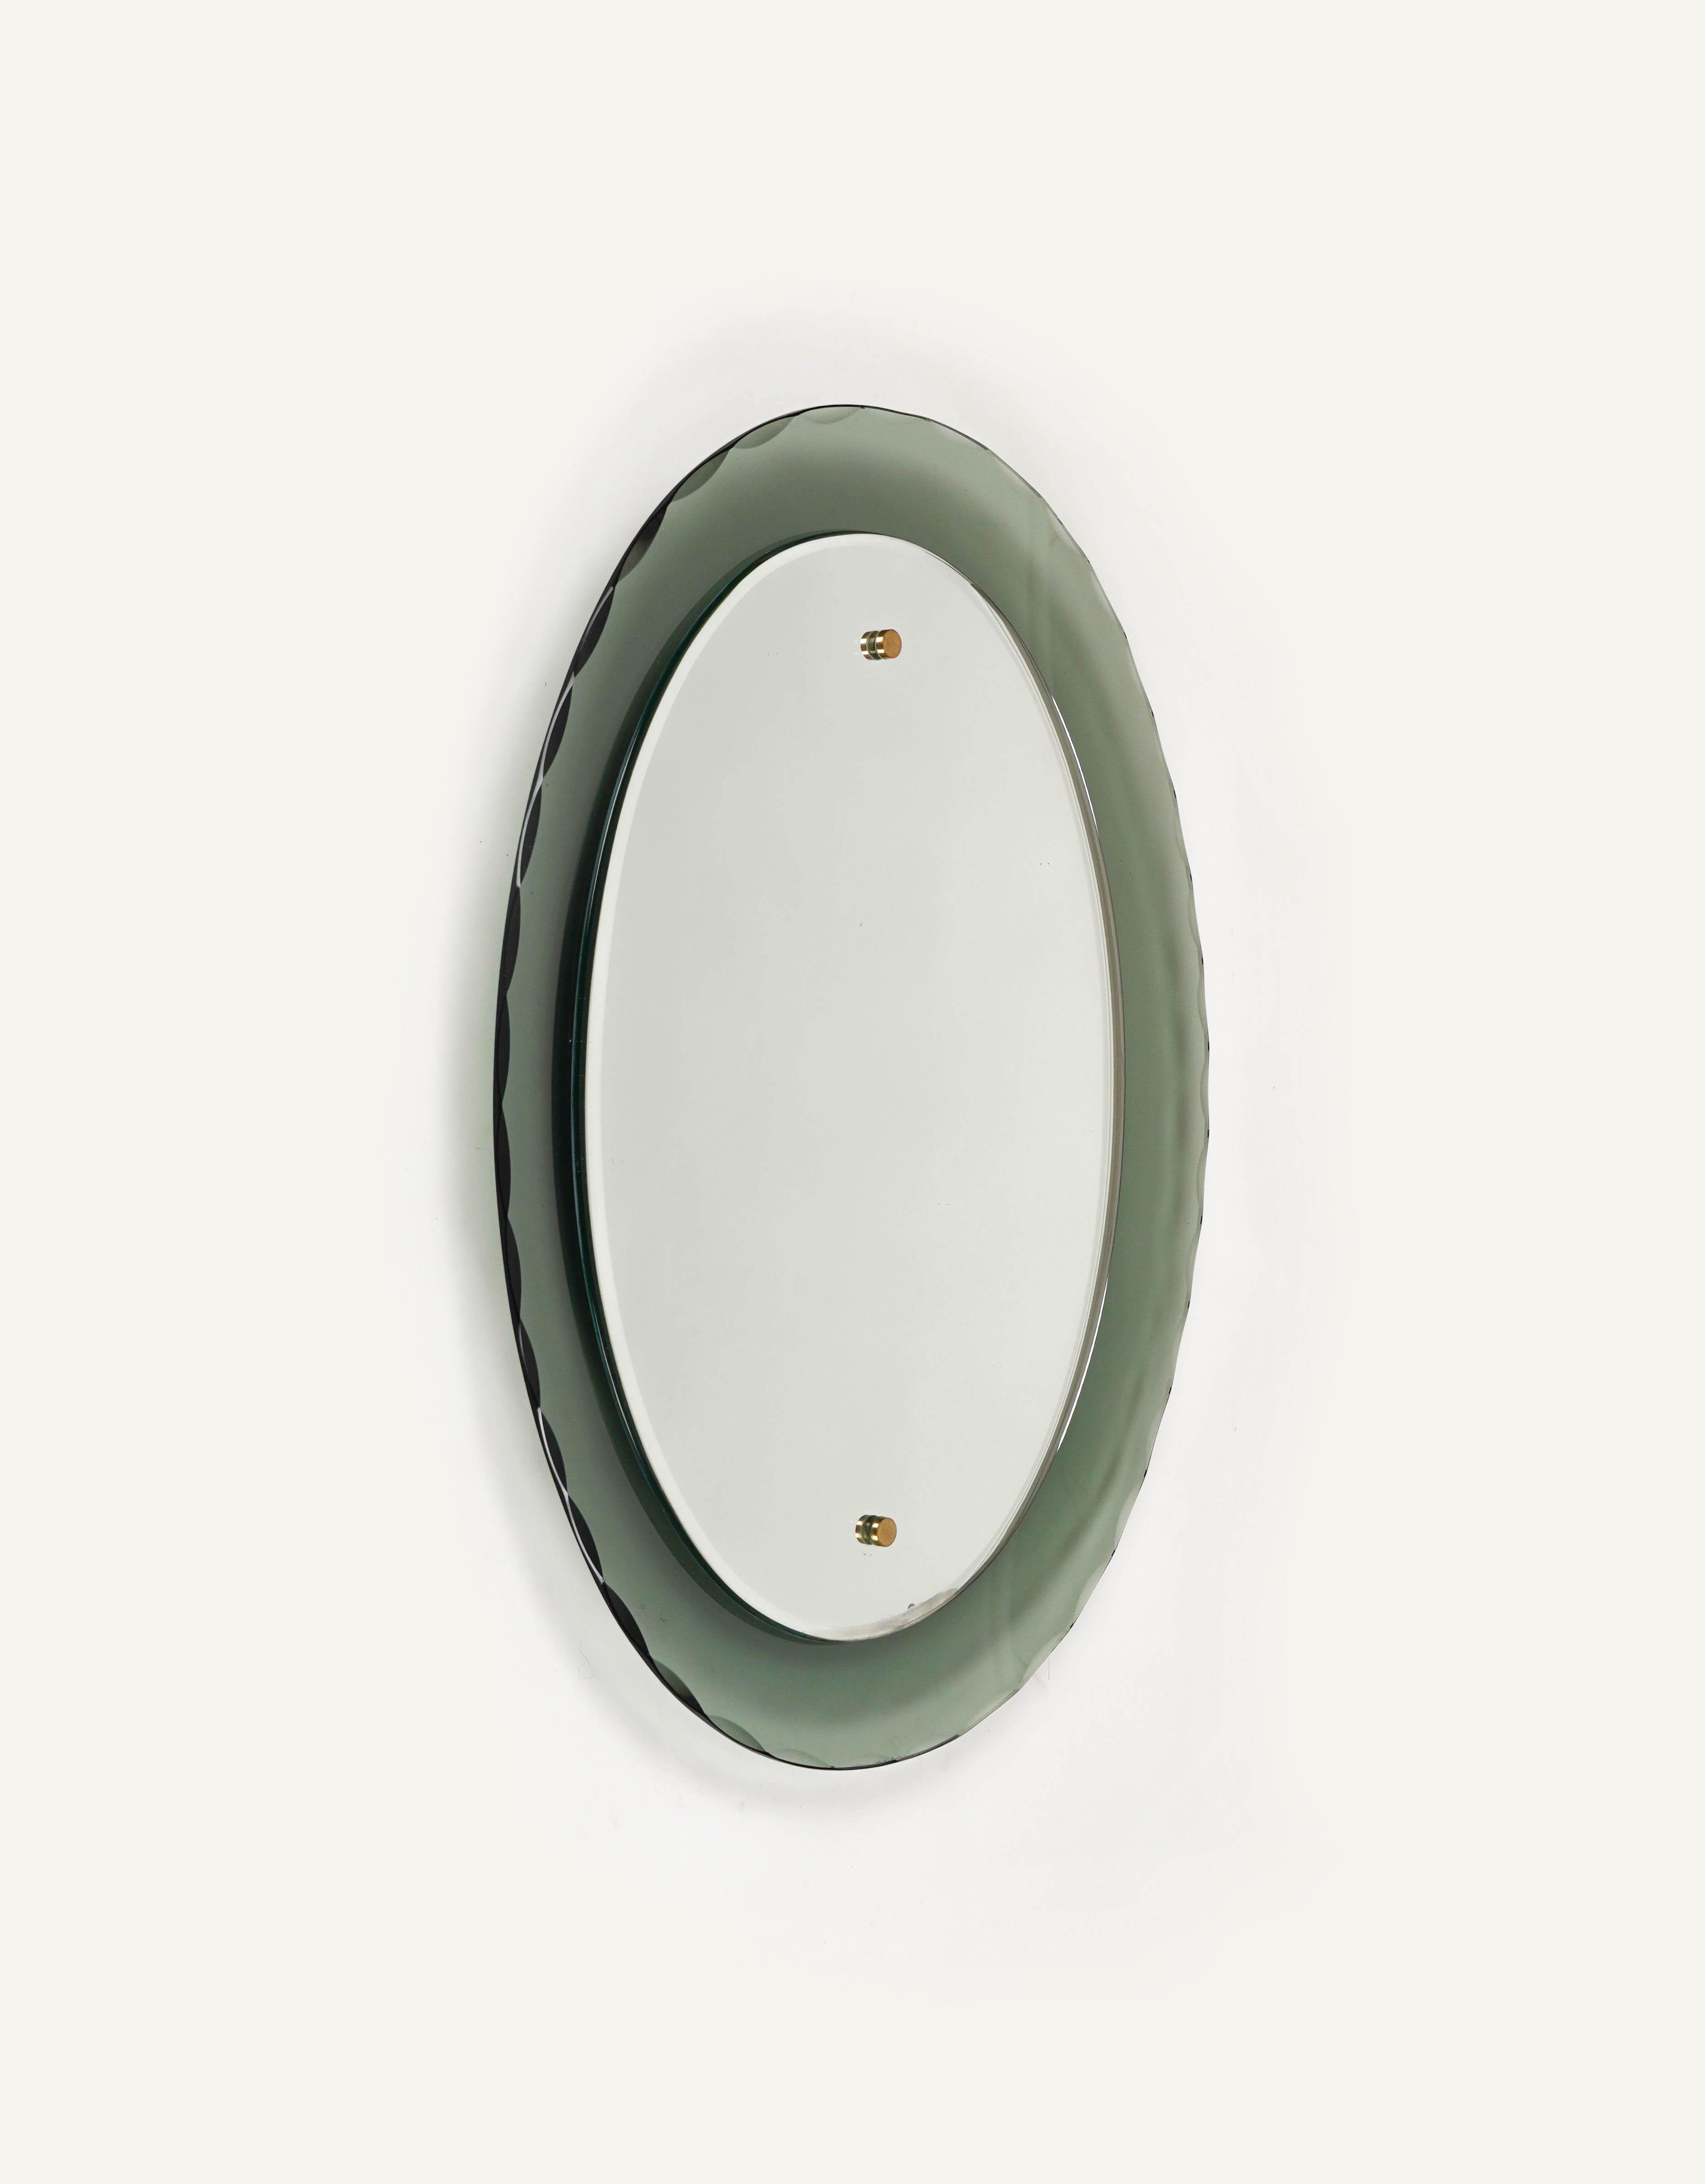 Magnifique miroir mural ovale courbé avec cadre en verre fumé sculpté par Cristal Arte.

Fabriqué en Italie dans les années 1960.

Le miroir est très bien fait, lourd et en bon état vintage.  

Ce miroir serait parfait pour une chambre, un dressing,